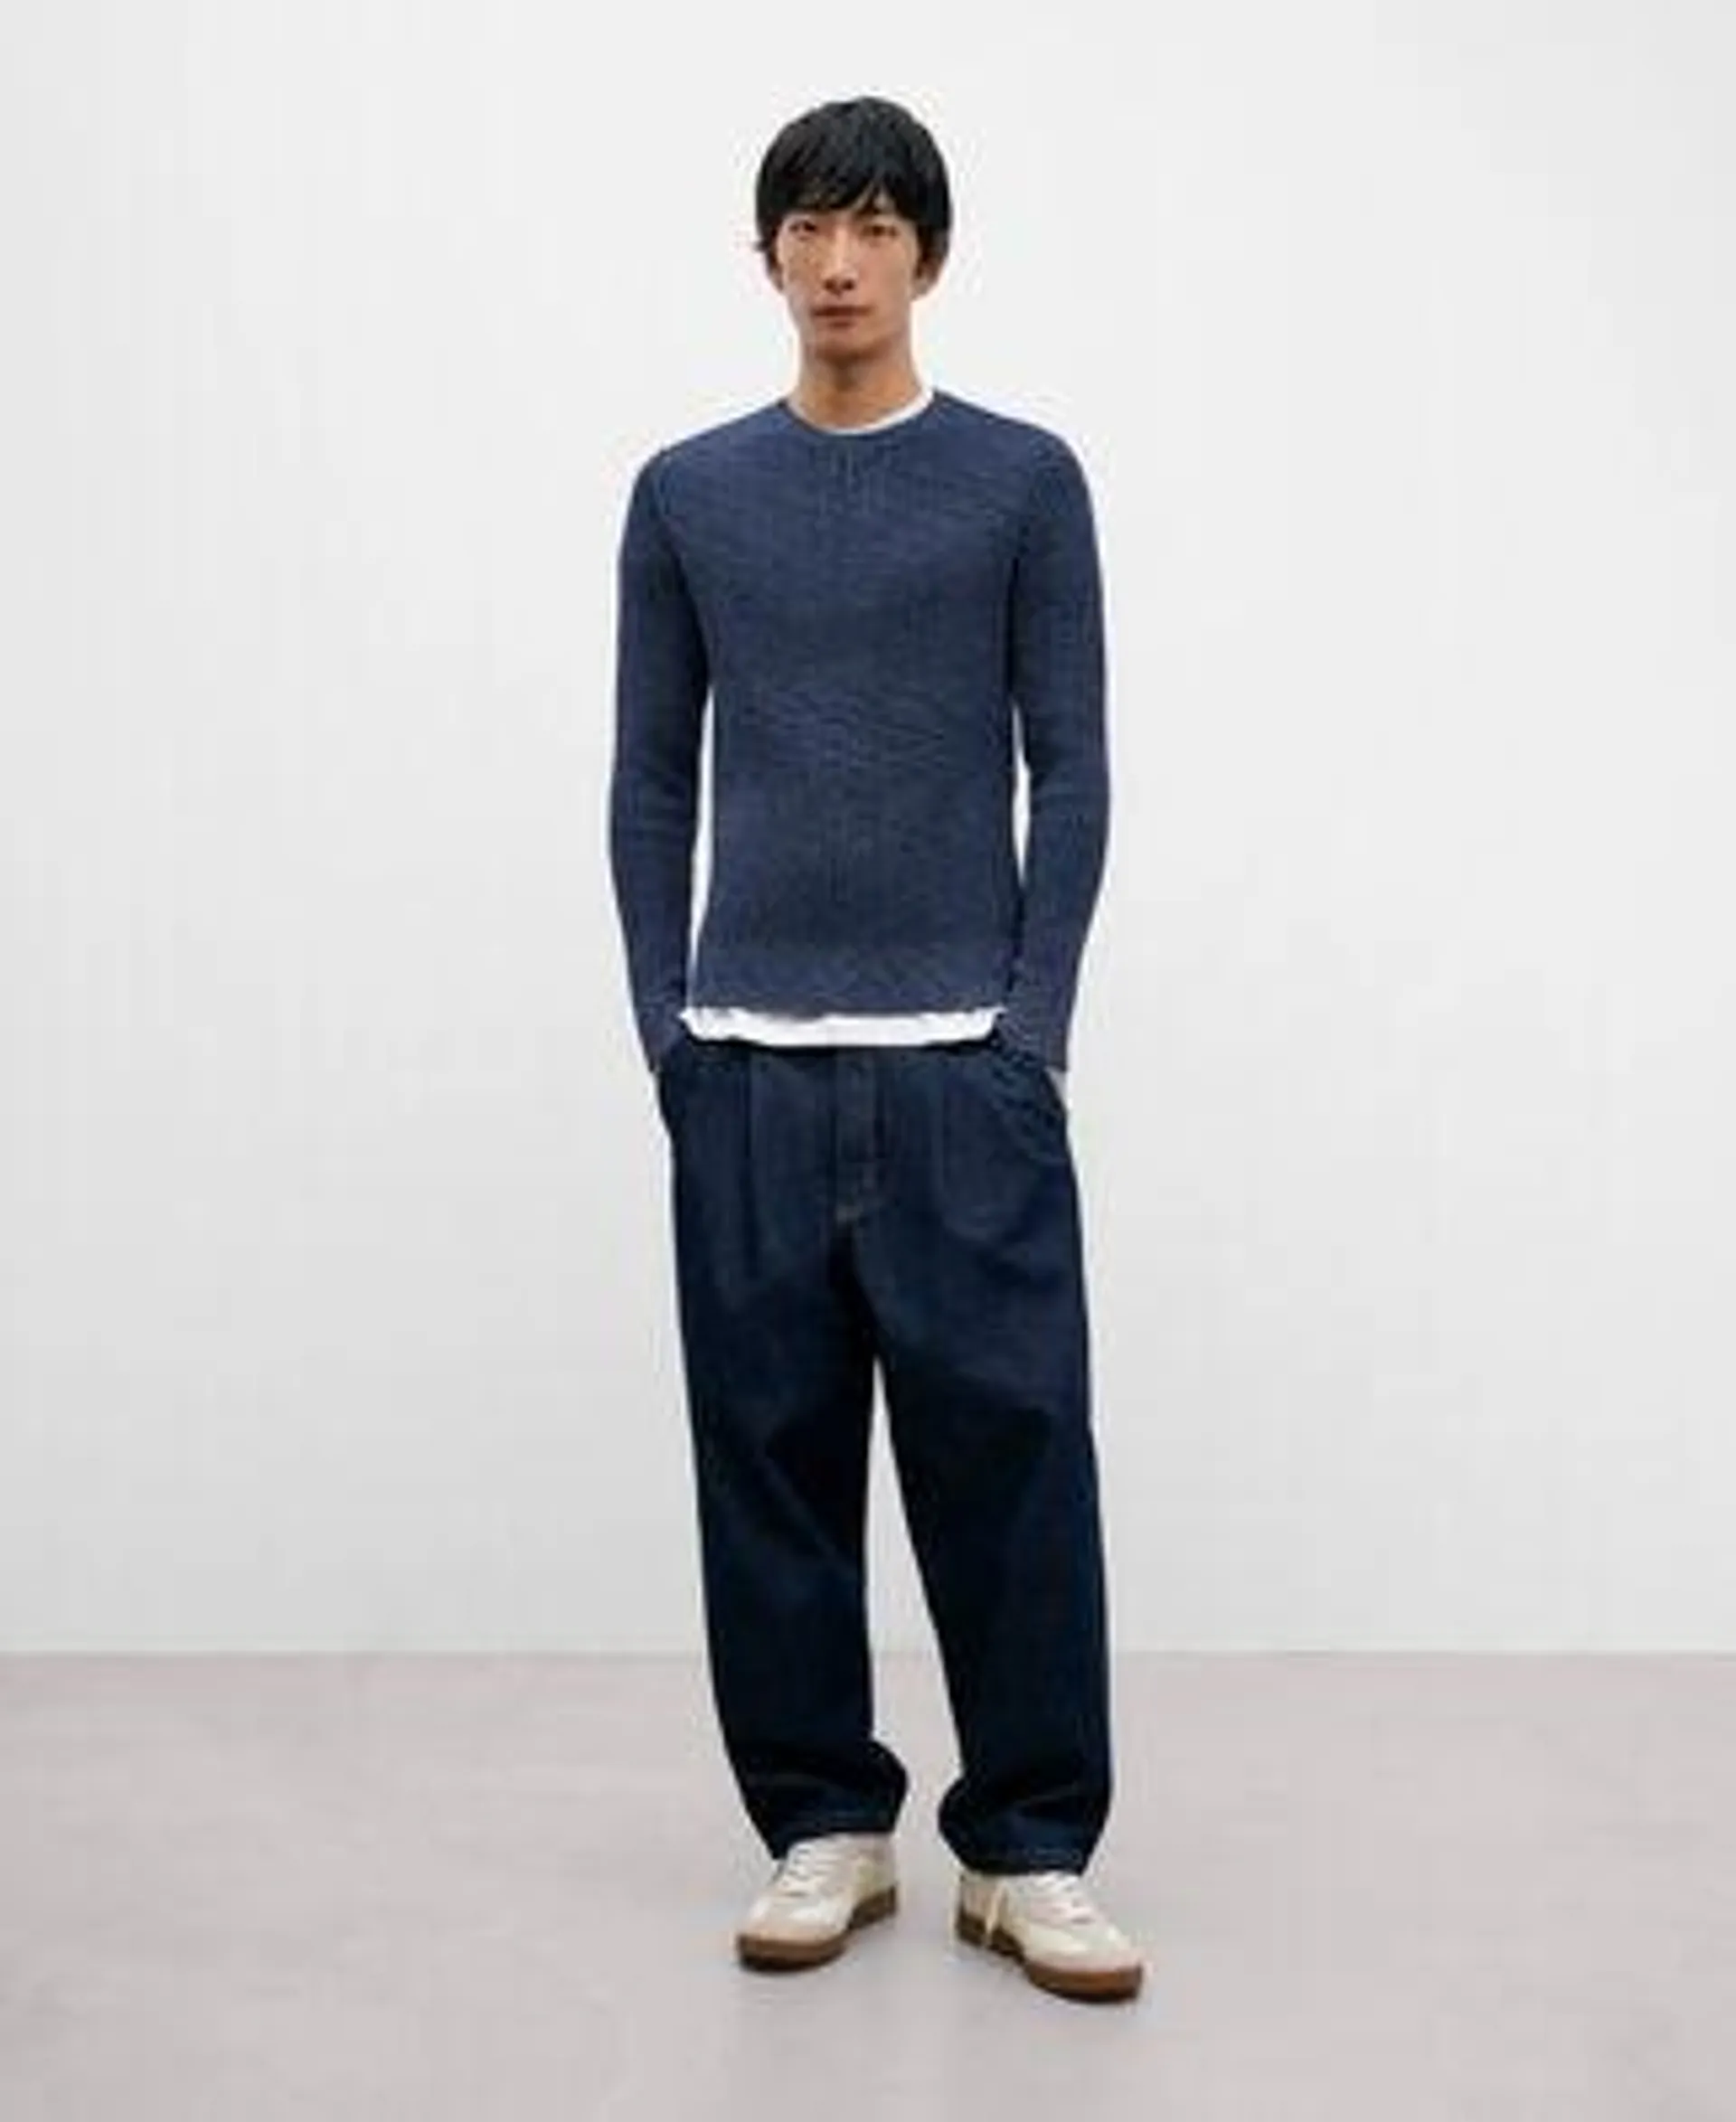 Blue melange knitted sweater for men